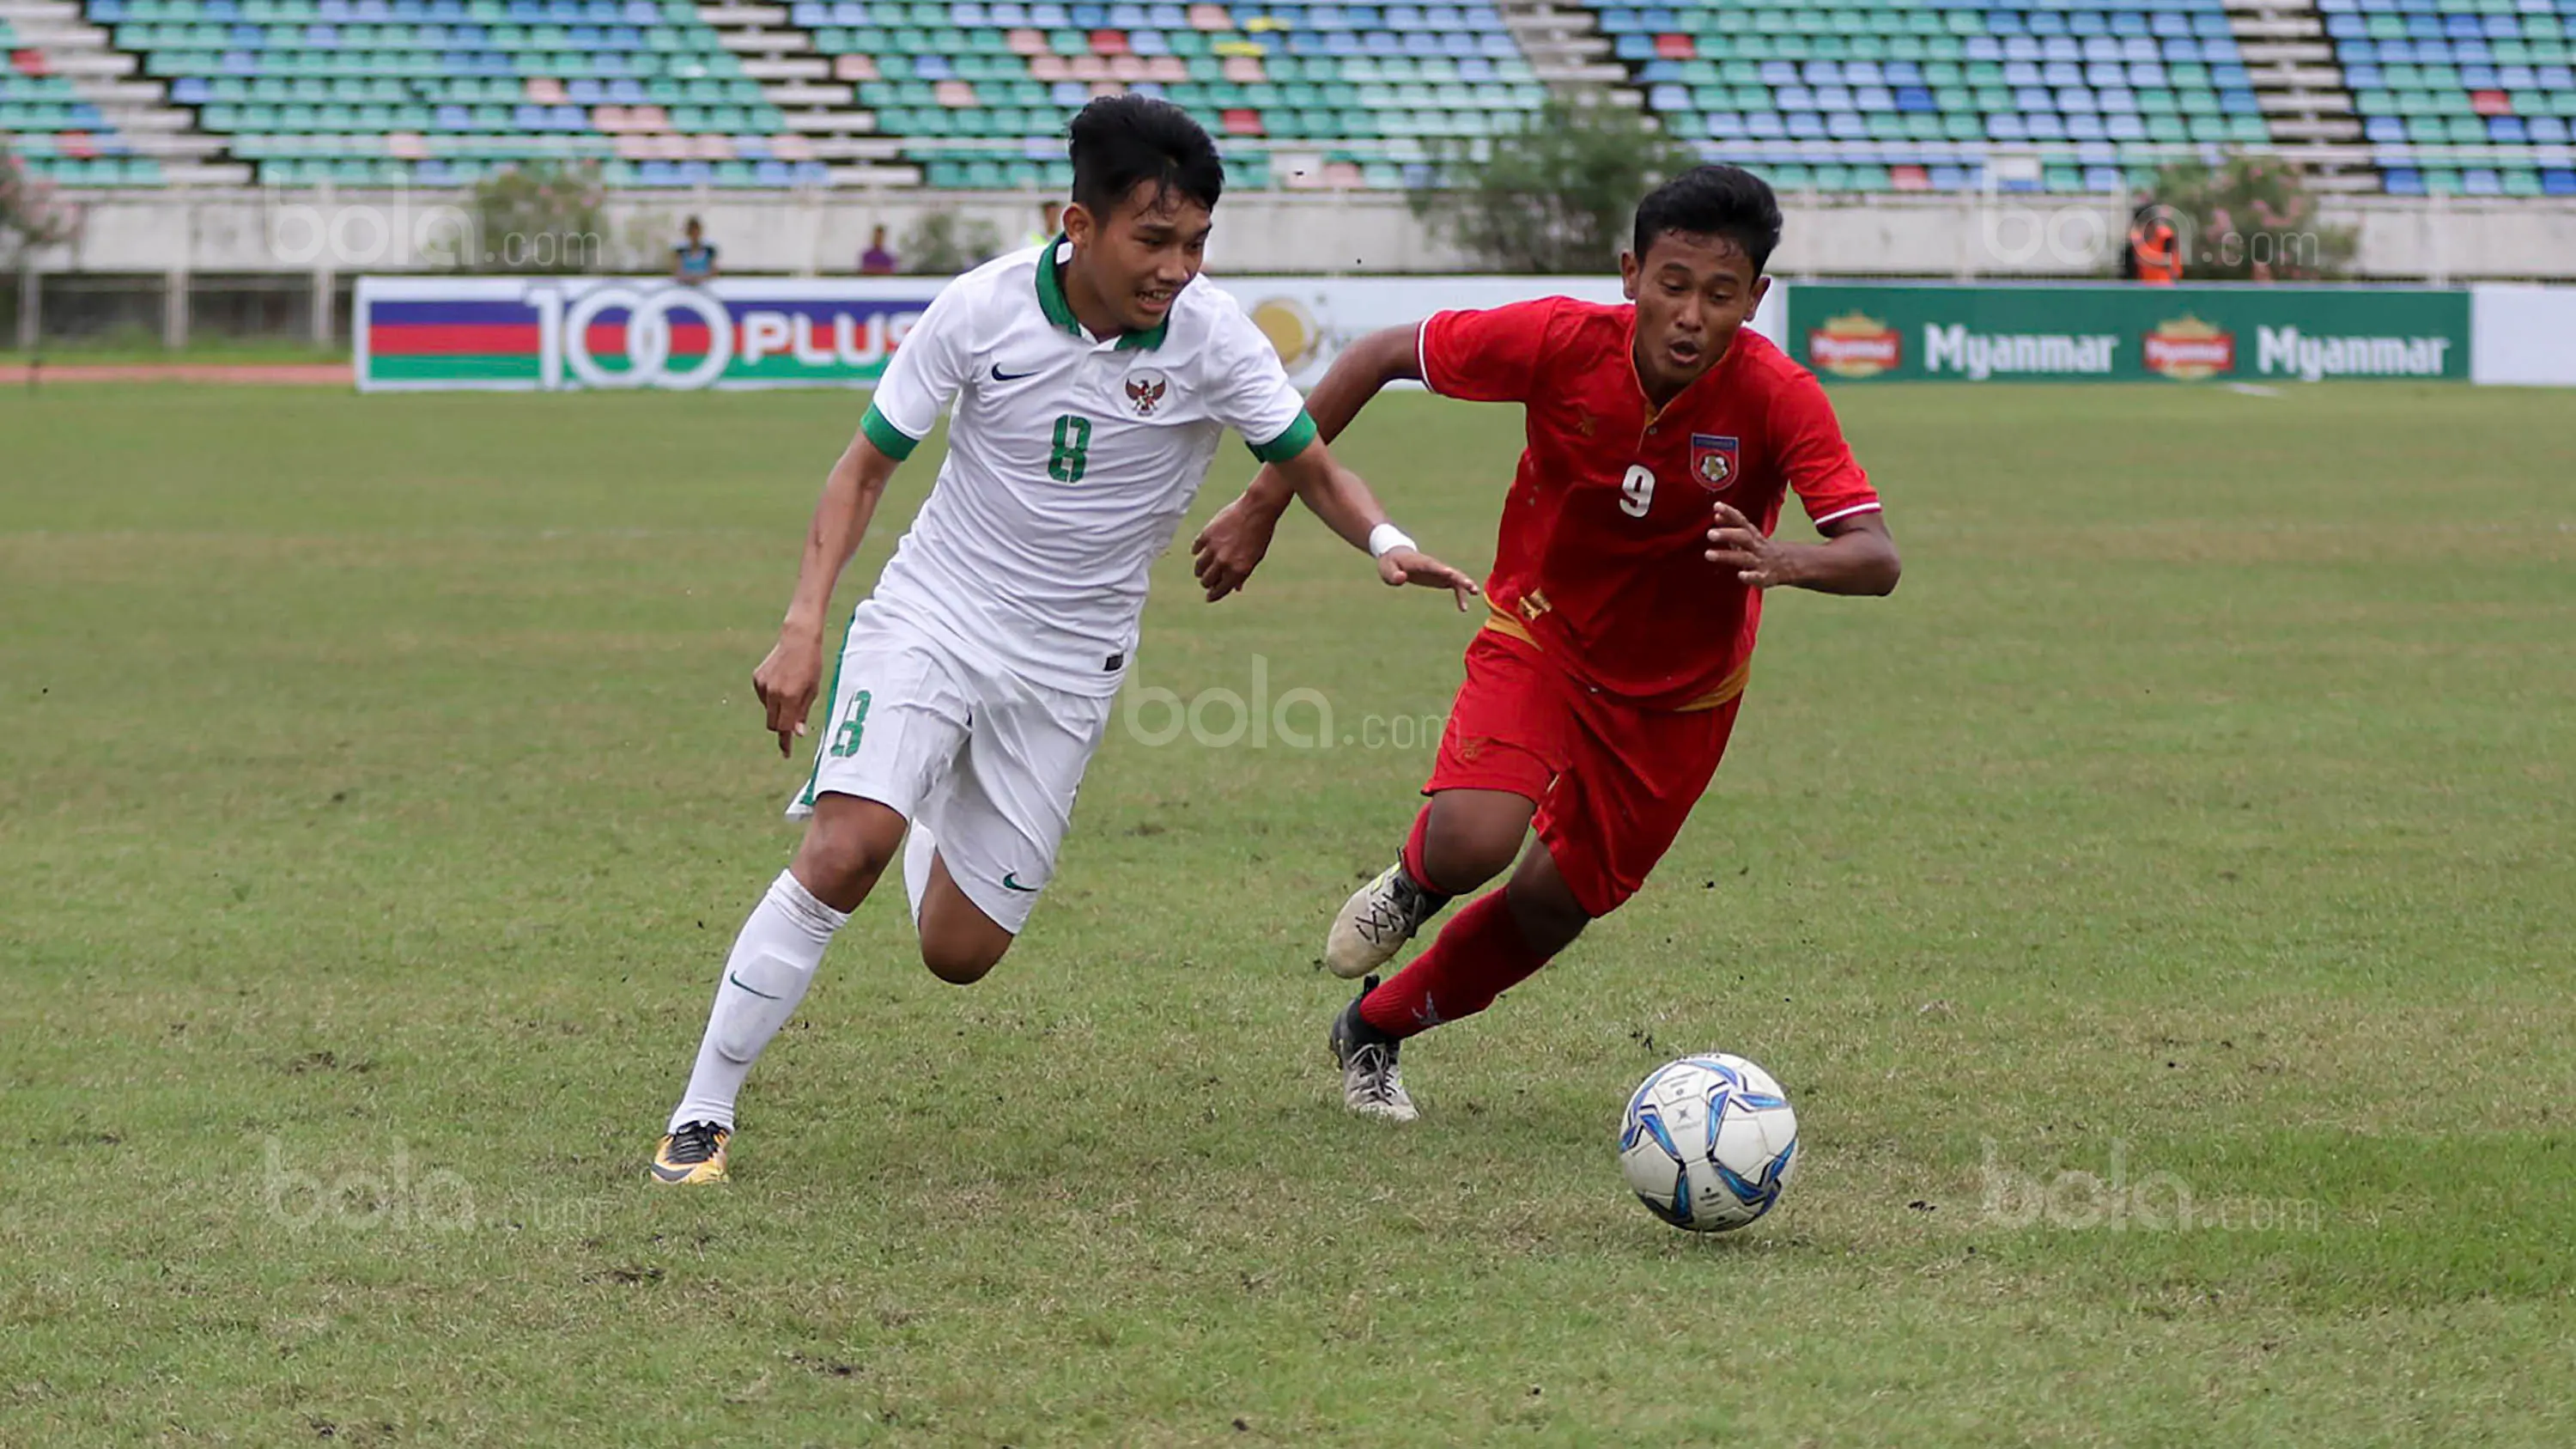 Pemain Timnas Indonesia U-19, Witan Sulaeman, saat pertandingan melawan Myanmar pada laga Piala AFF U-18 di Stadion Thuwunna, Minggu (17/9/2017). Indonesia menang 7-1 atas Myanmar. (Liputan6.com/Yoppy Renato)